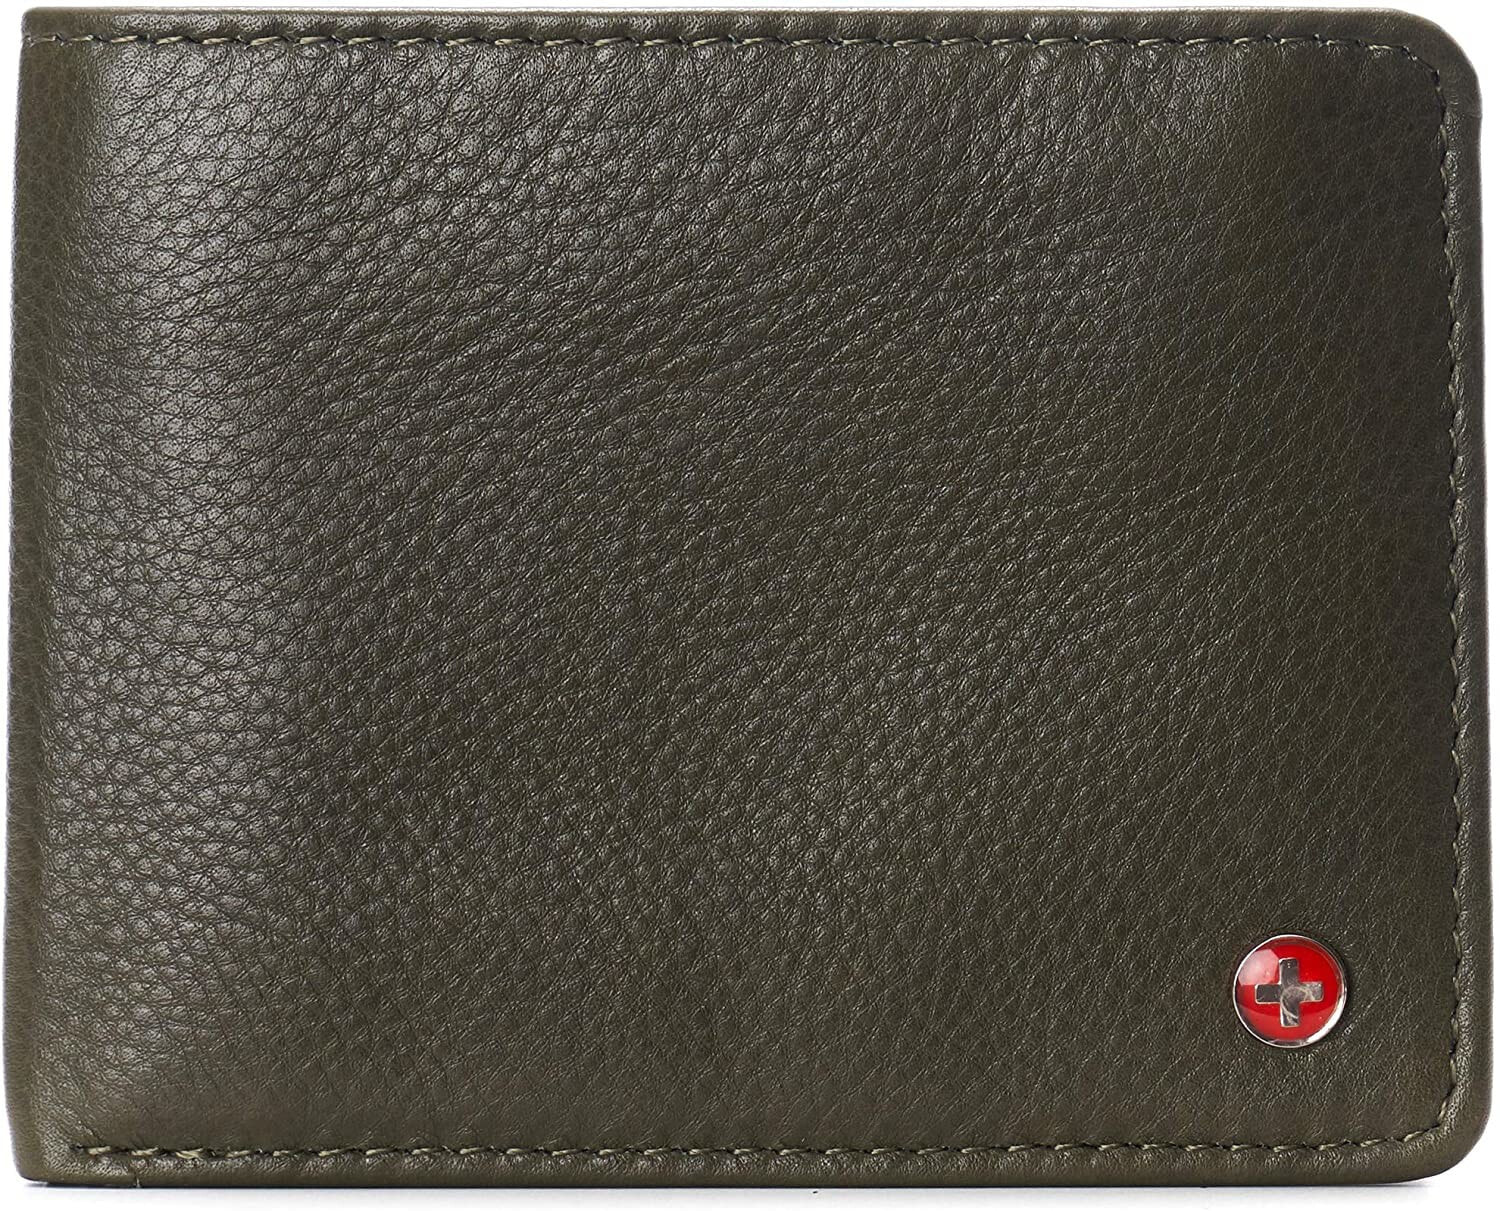 Мужское портмоне кожаное горизонтальное черное без застежки Alpine Swiss RFID Connor Passcase Bifold Wallet For Men Leather Comes in a Gift Box